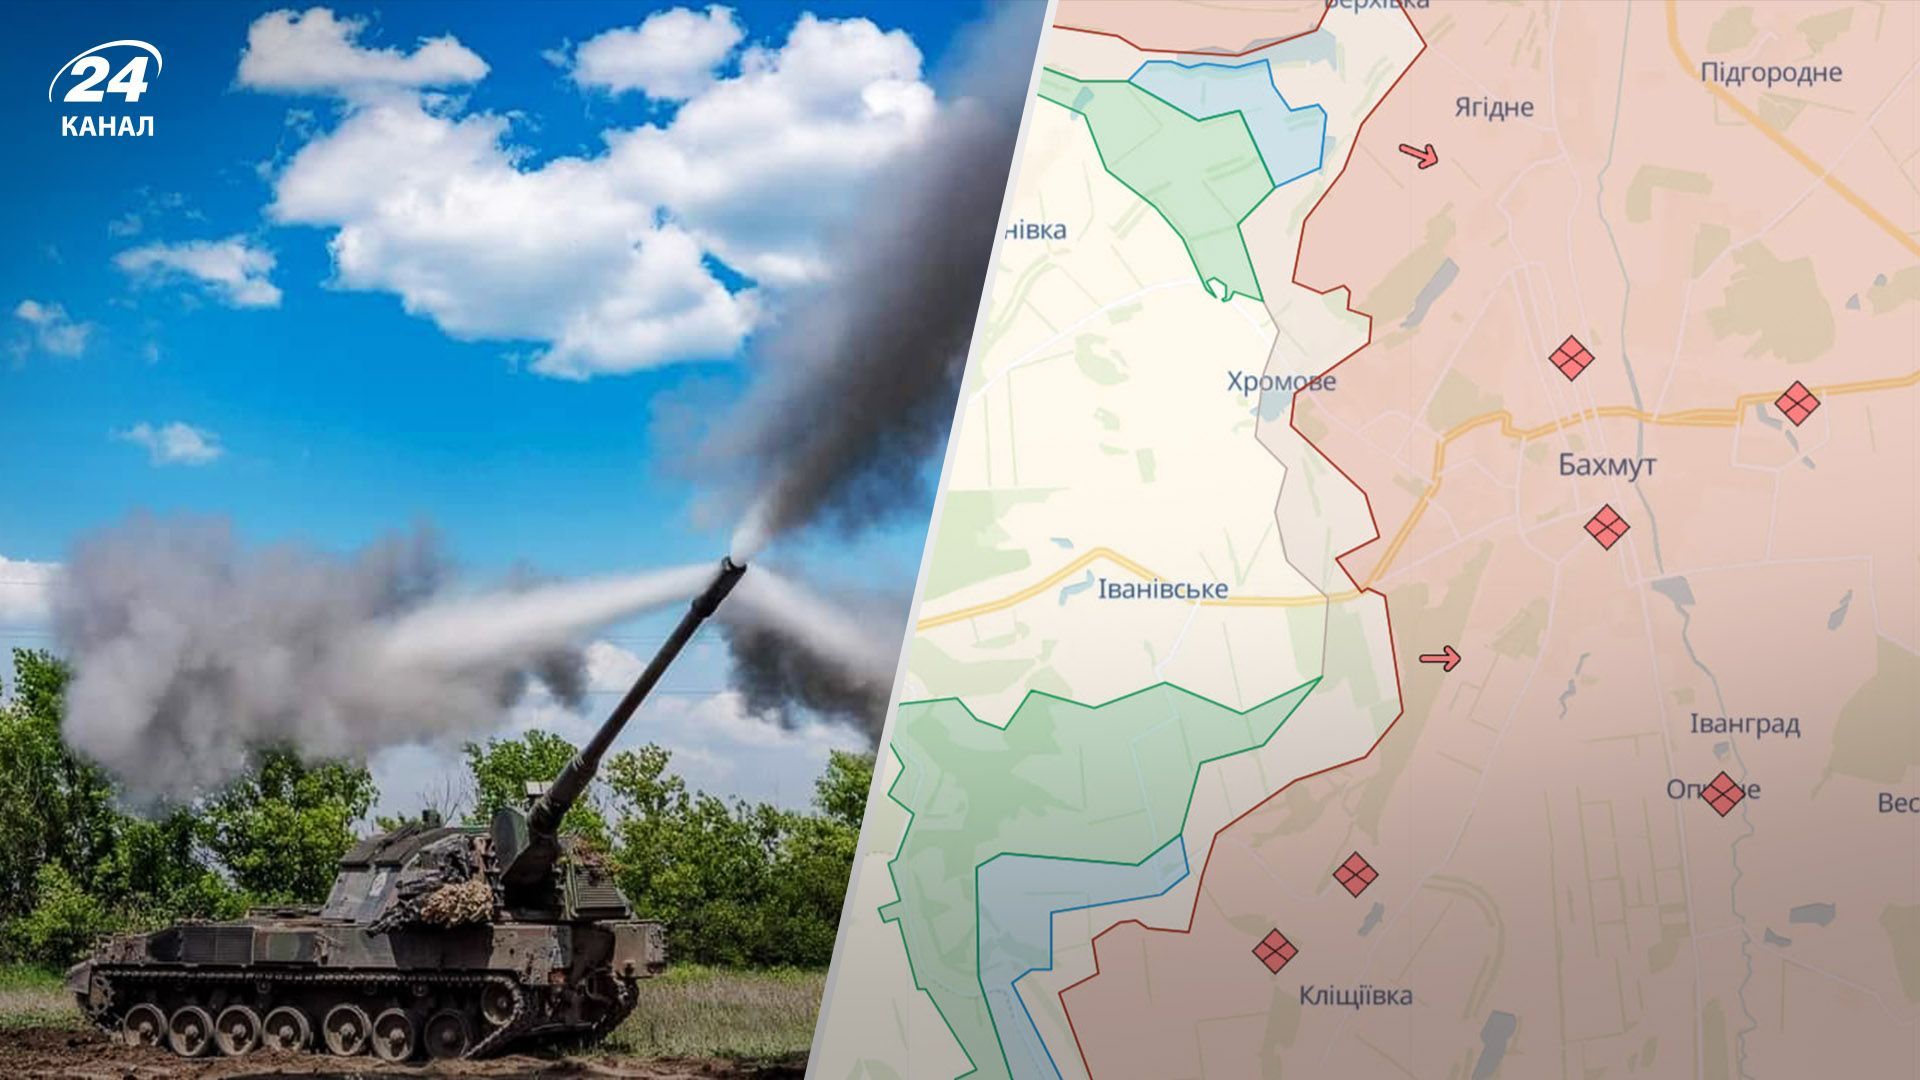 Более 40 столкновений с врагом, ВСУ продвинулись возле Бахмута: карта боевых действий 2 августа - 24 Канал